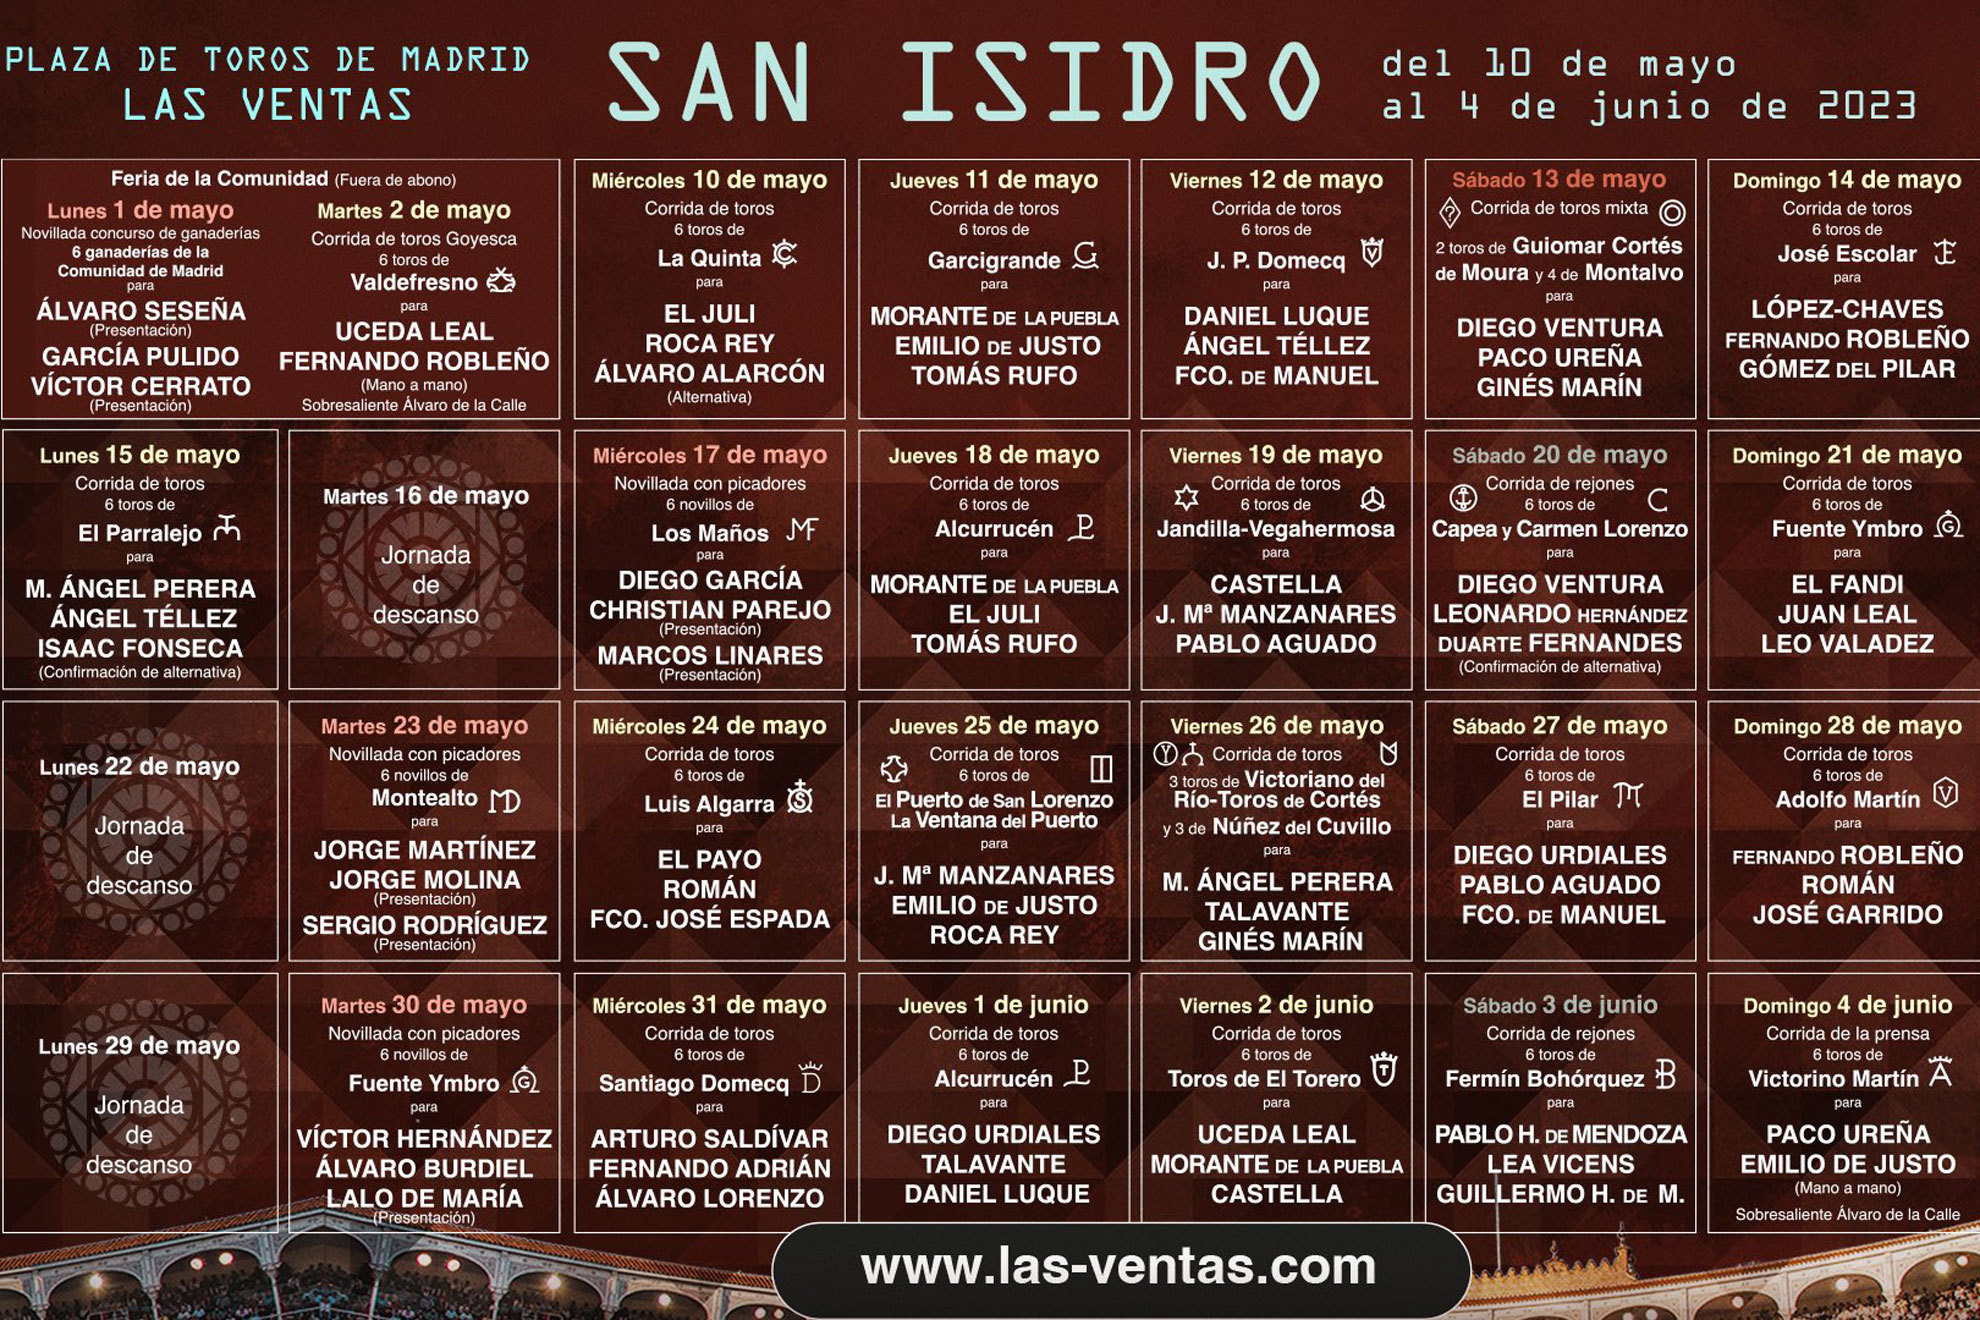 San Isidro 2023, una apuesta por la taquilla y vuelco en TV